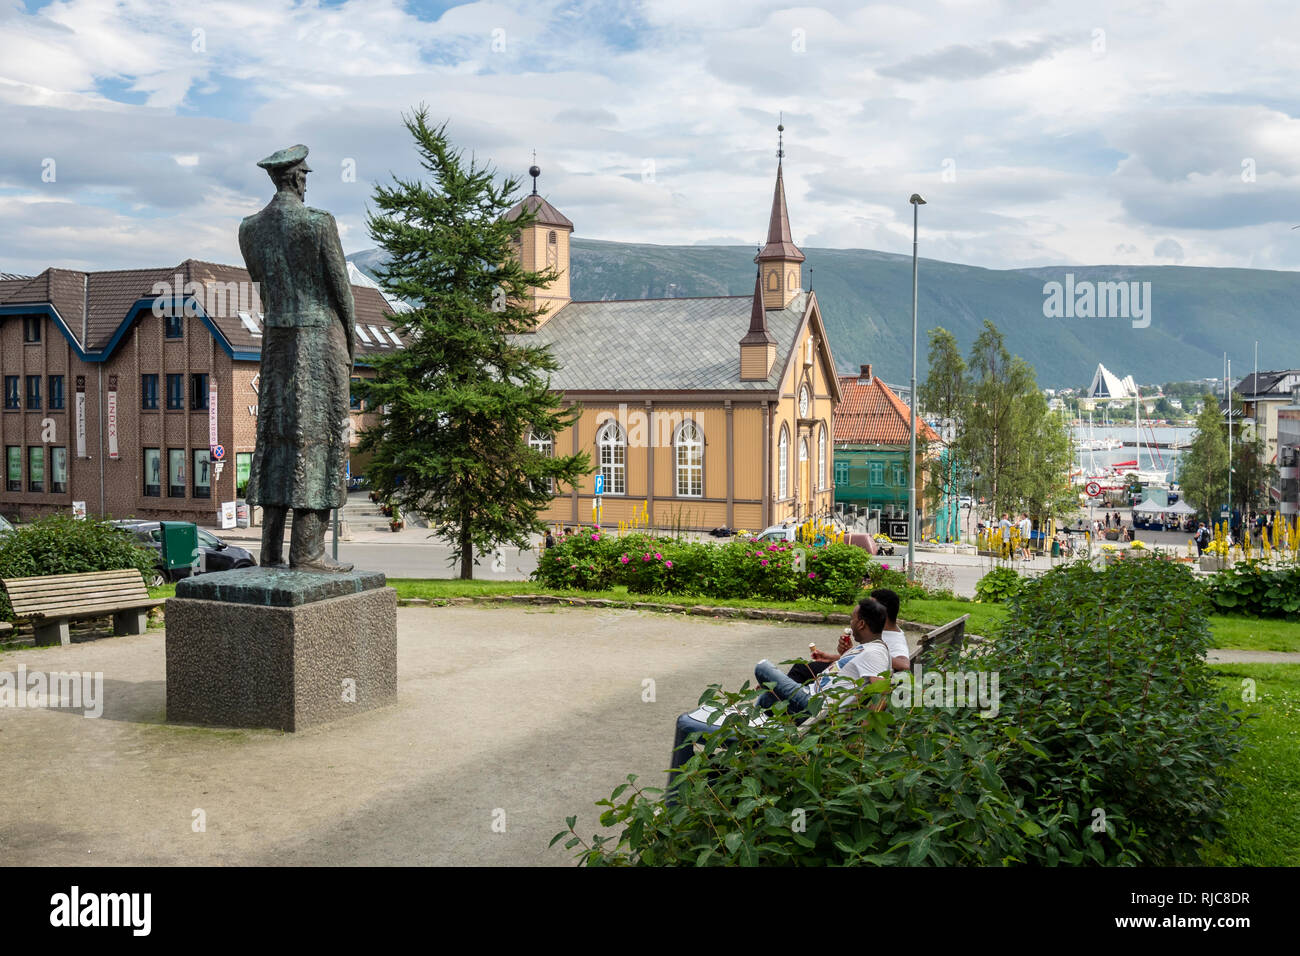 Tromsö centro, piccolo parco, chiesa cattolica "Tromsö stift', vista del porto e la cattedrale, all'altro lato del mare, Tromsö, Norvegia. Foto Stock